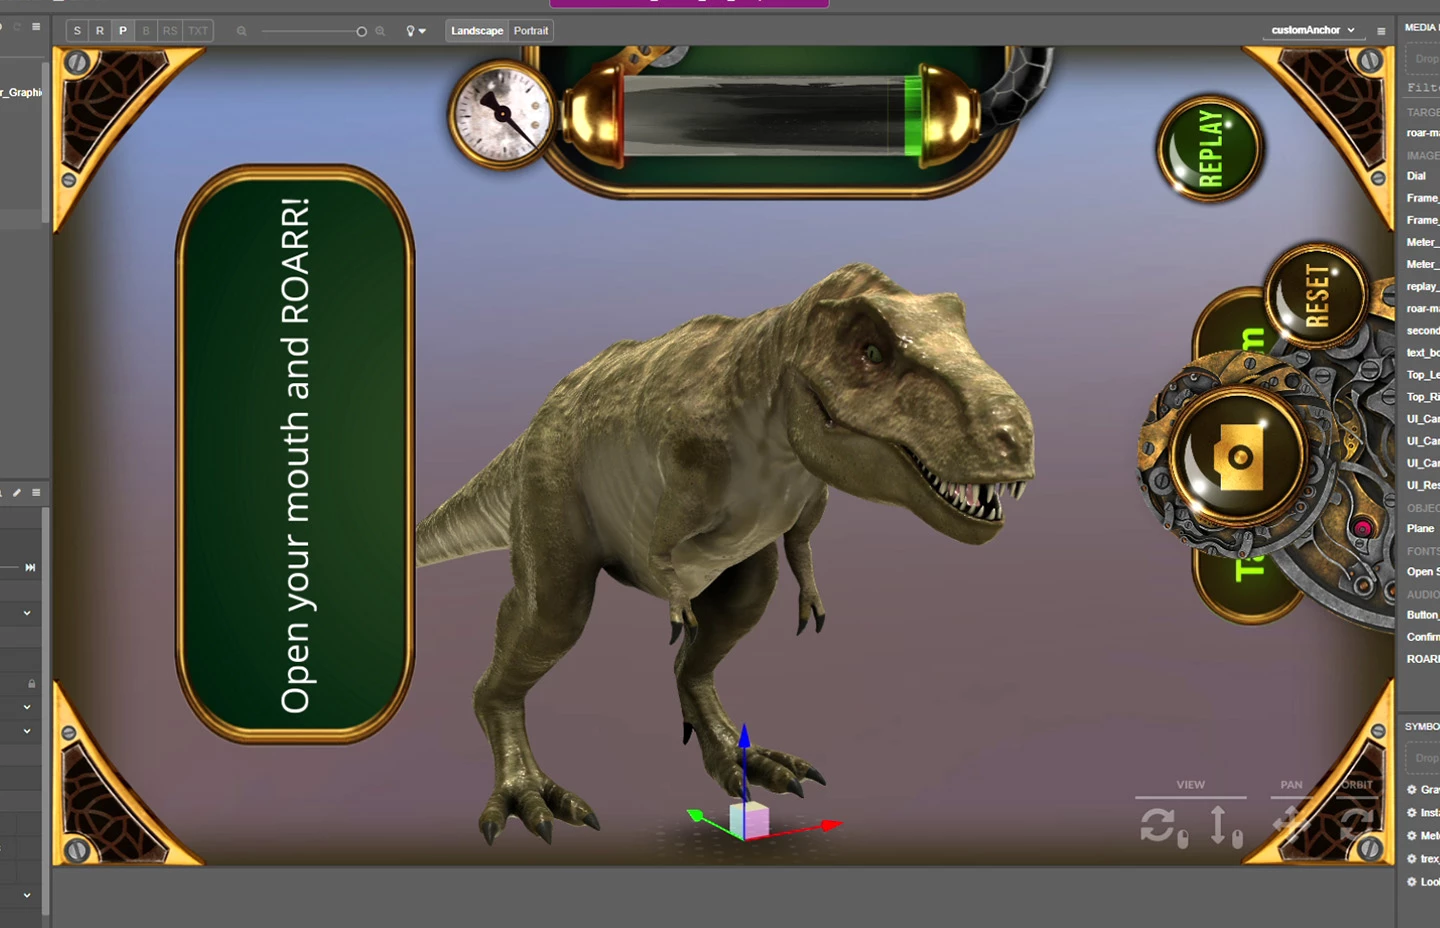 an app screen showing a T-Rex